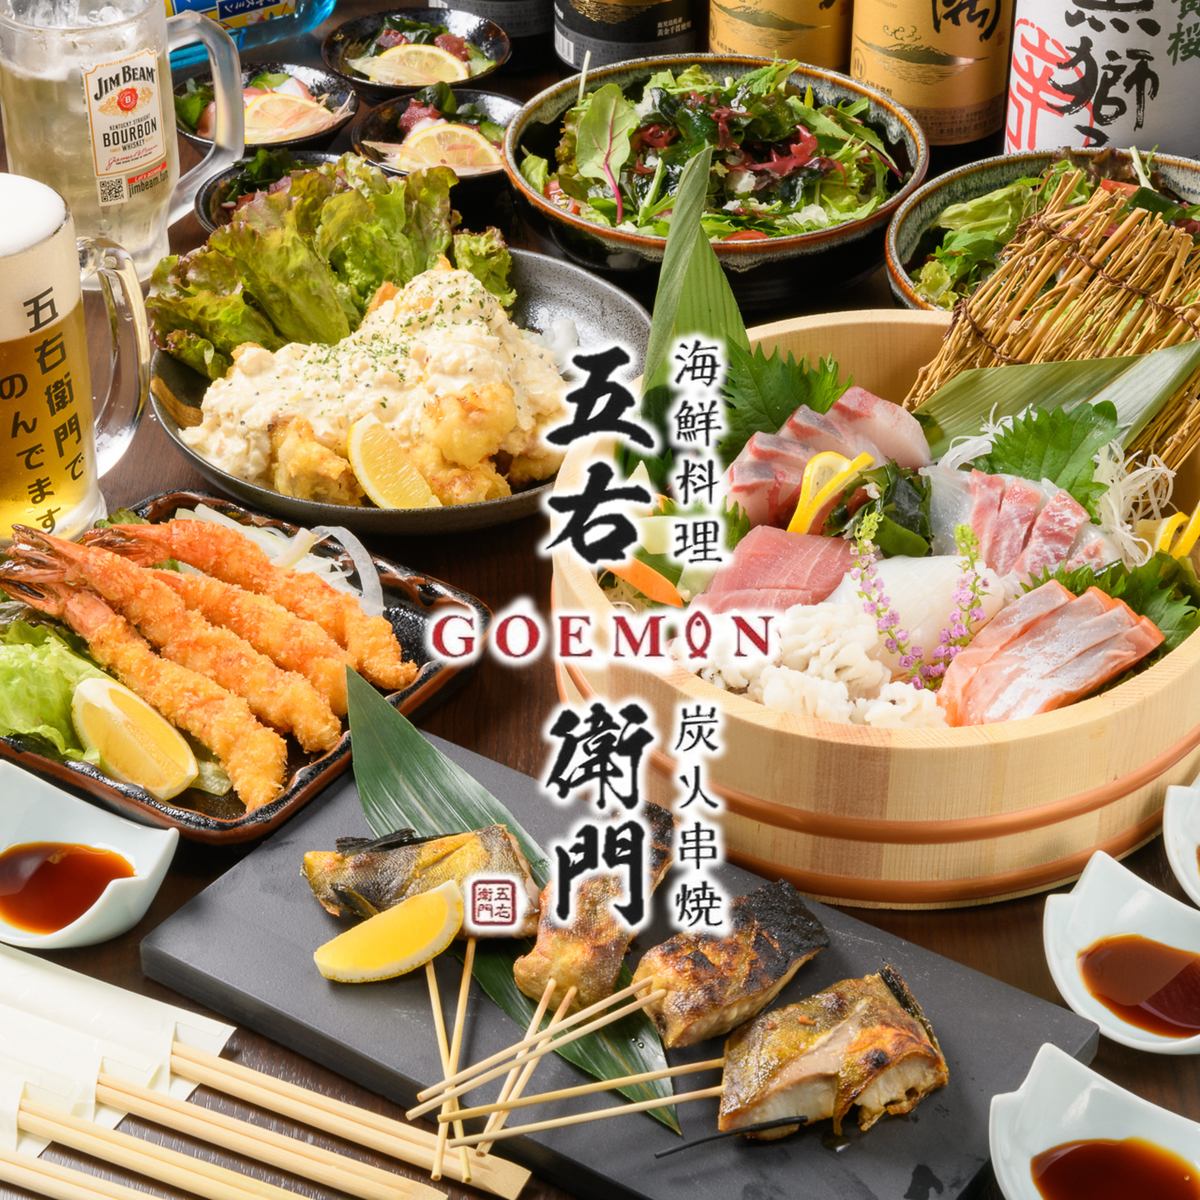 在輕鬆的日式用餐空間中盡情享用新鮮的海鮮和炭烤串。